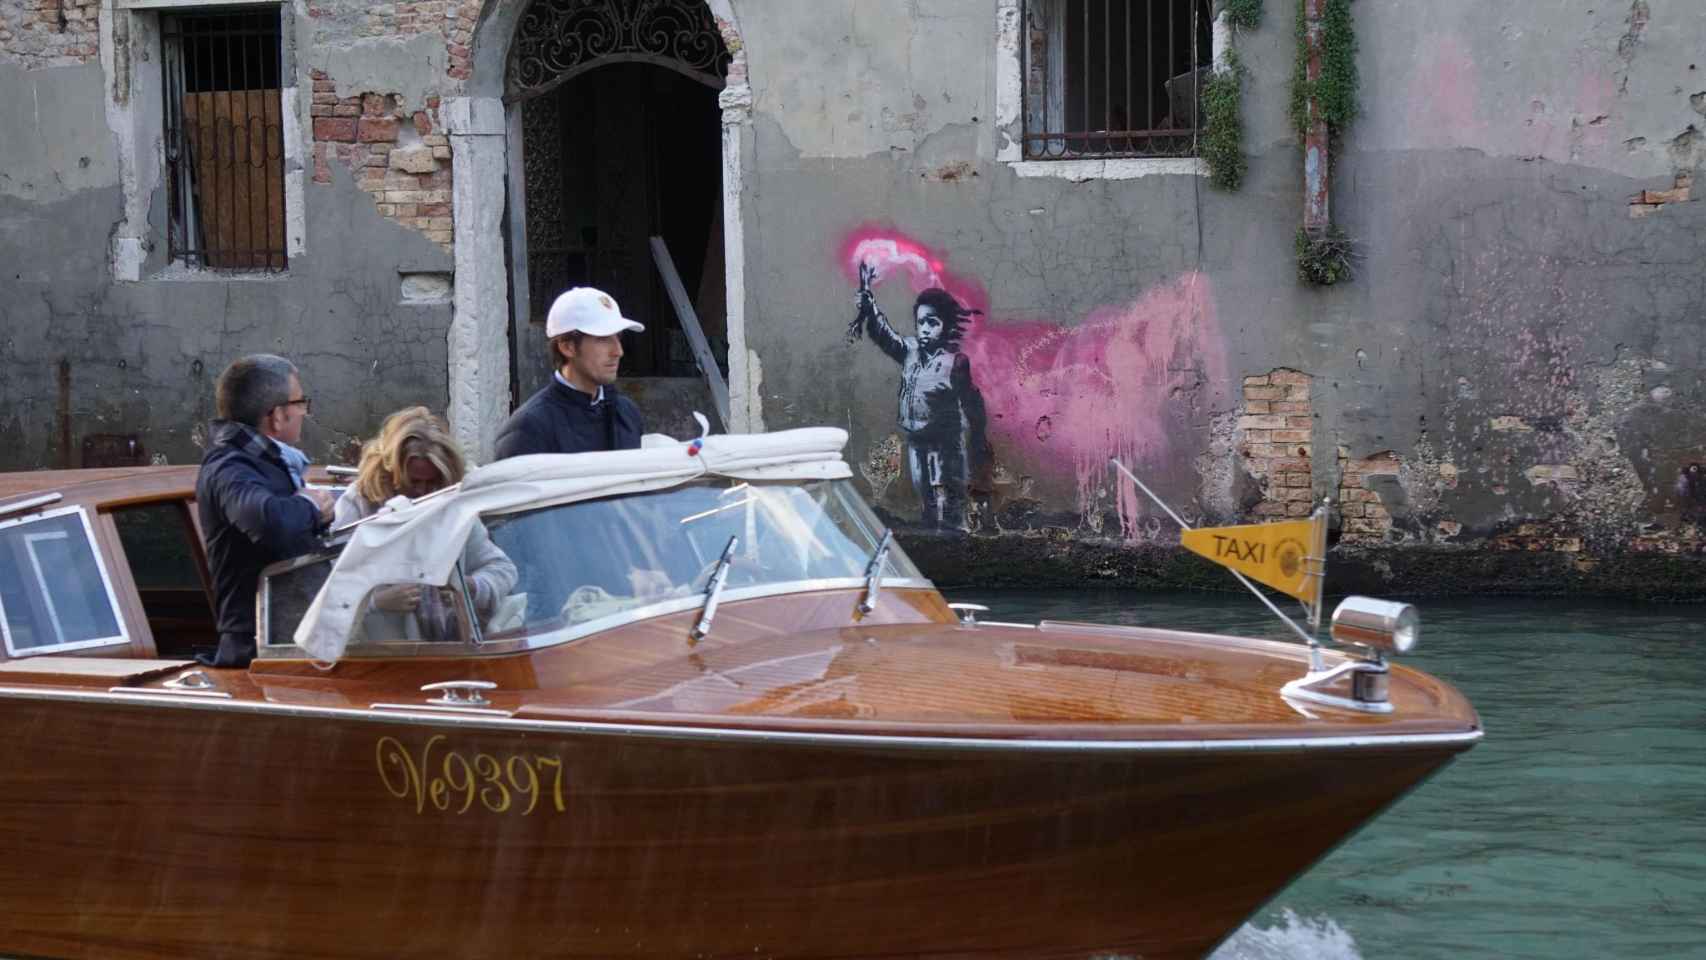 Nueva obra de Bansky en Venecia.